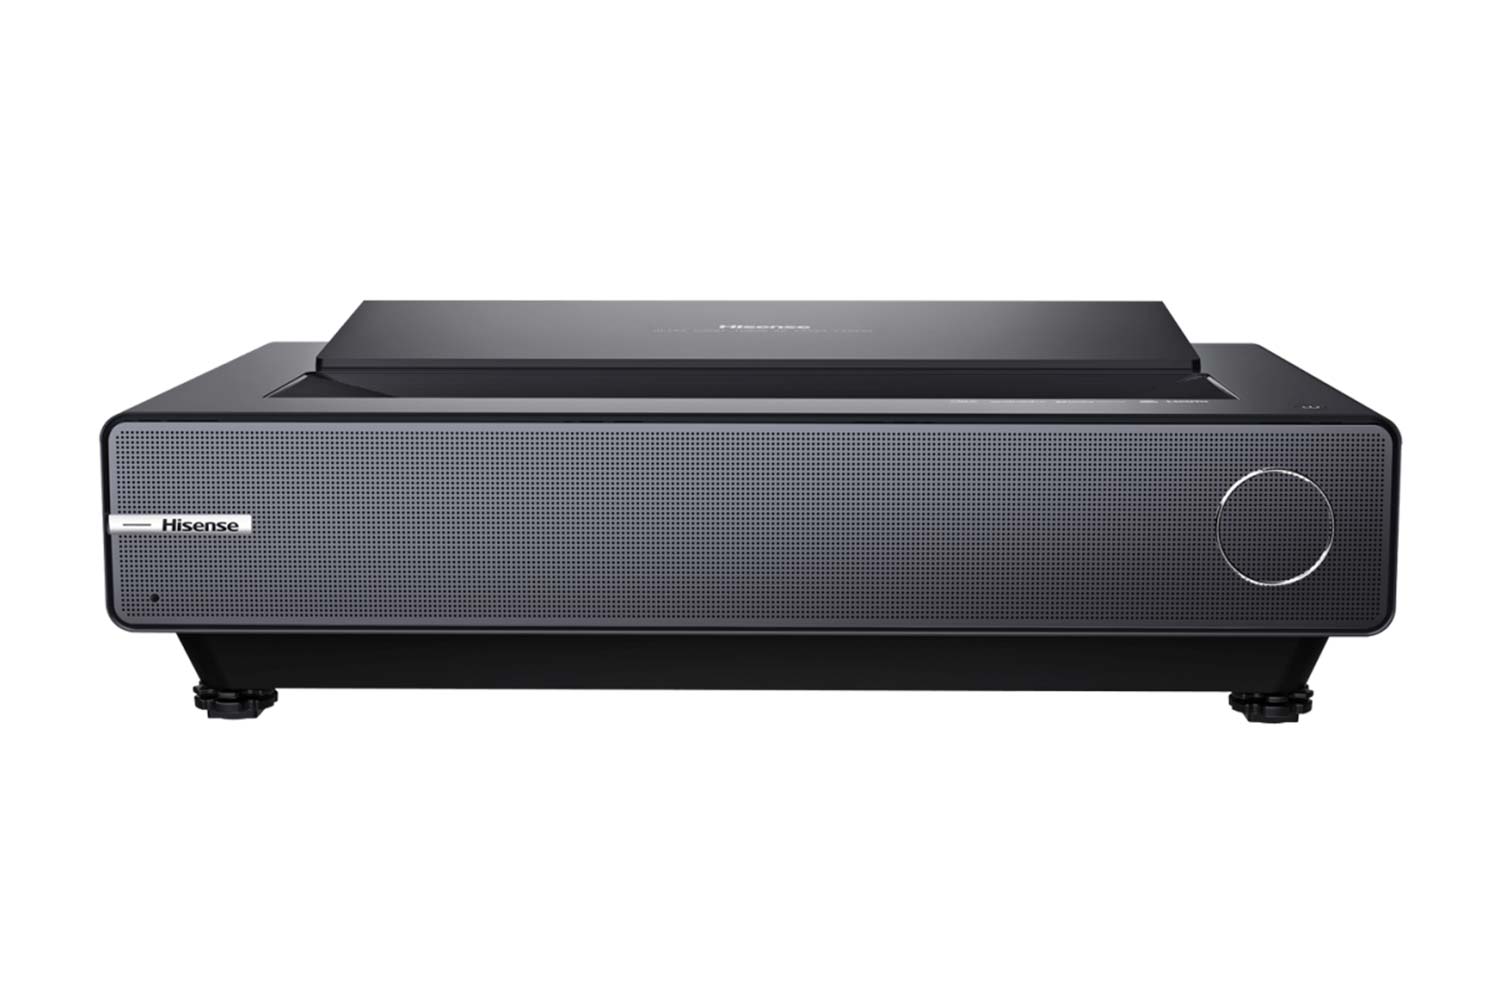 Hisense PX-1 Pro Laser TV front